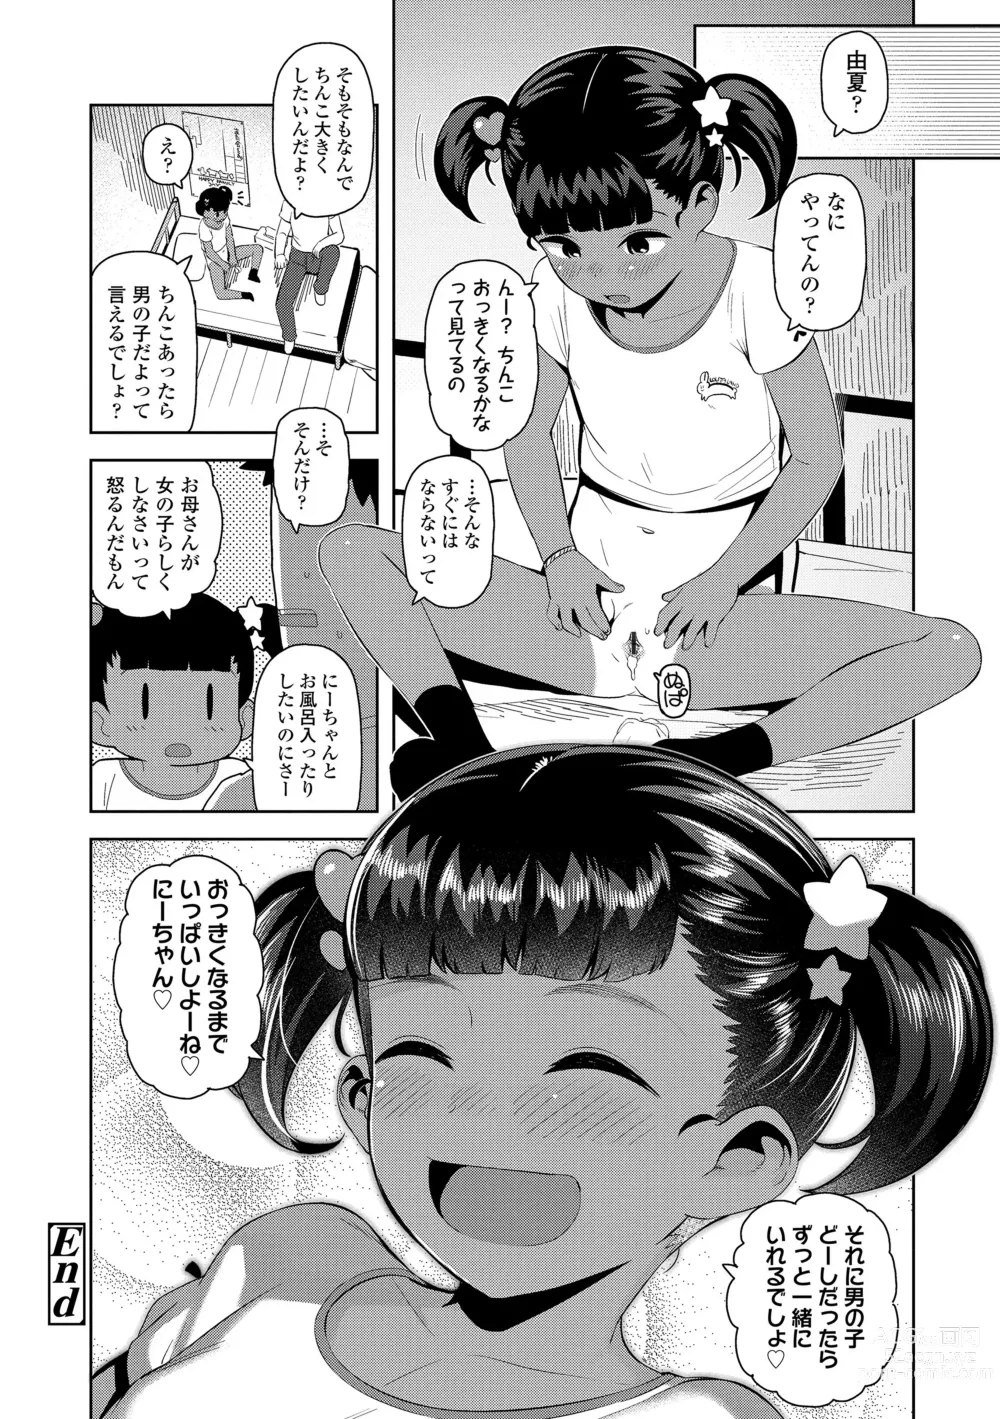 Page 190 of manga Chitchakute ohisama no nioi